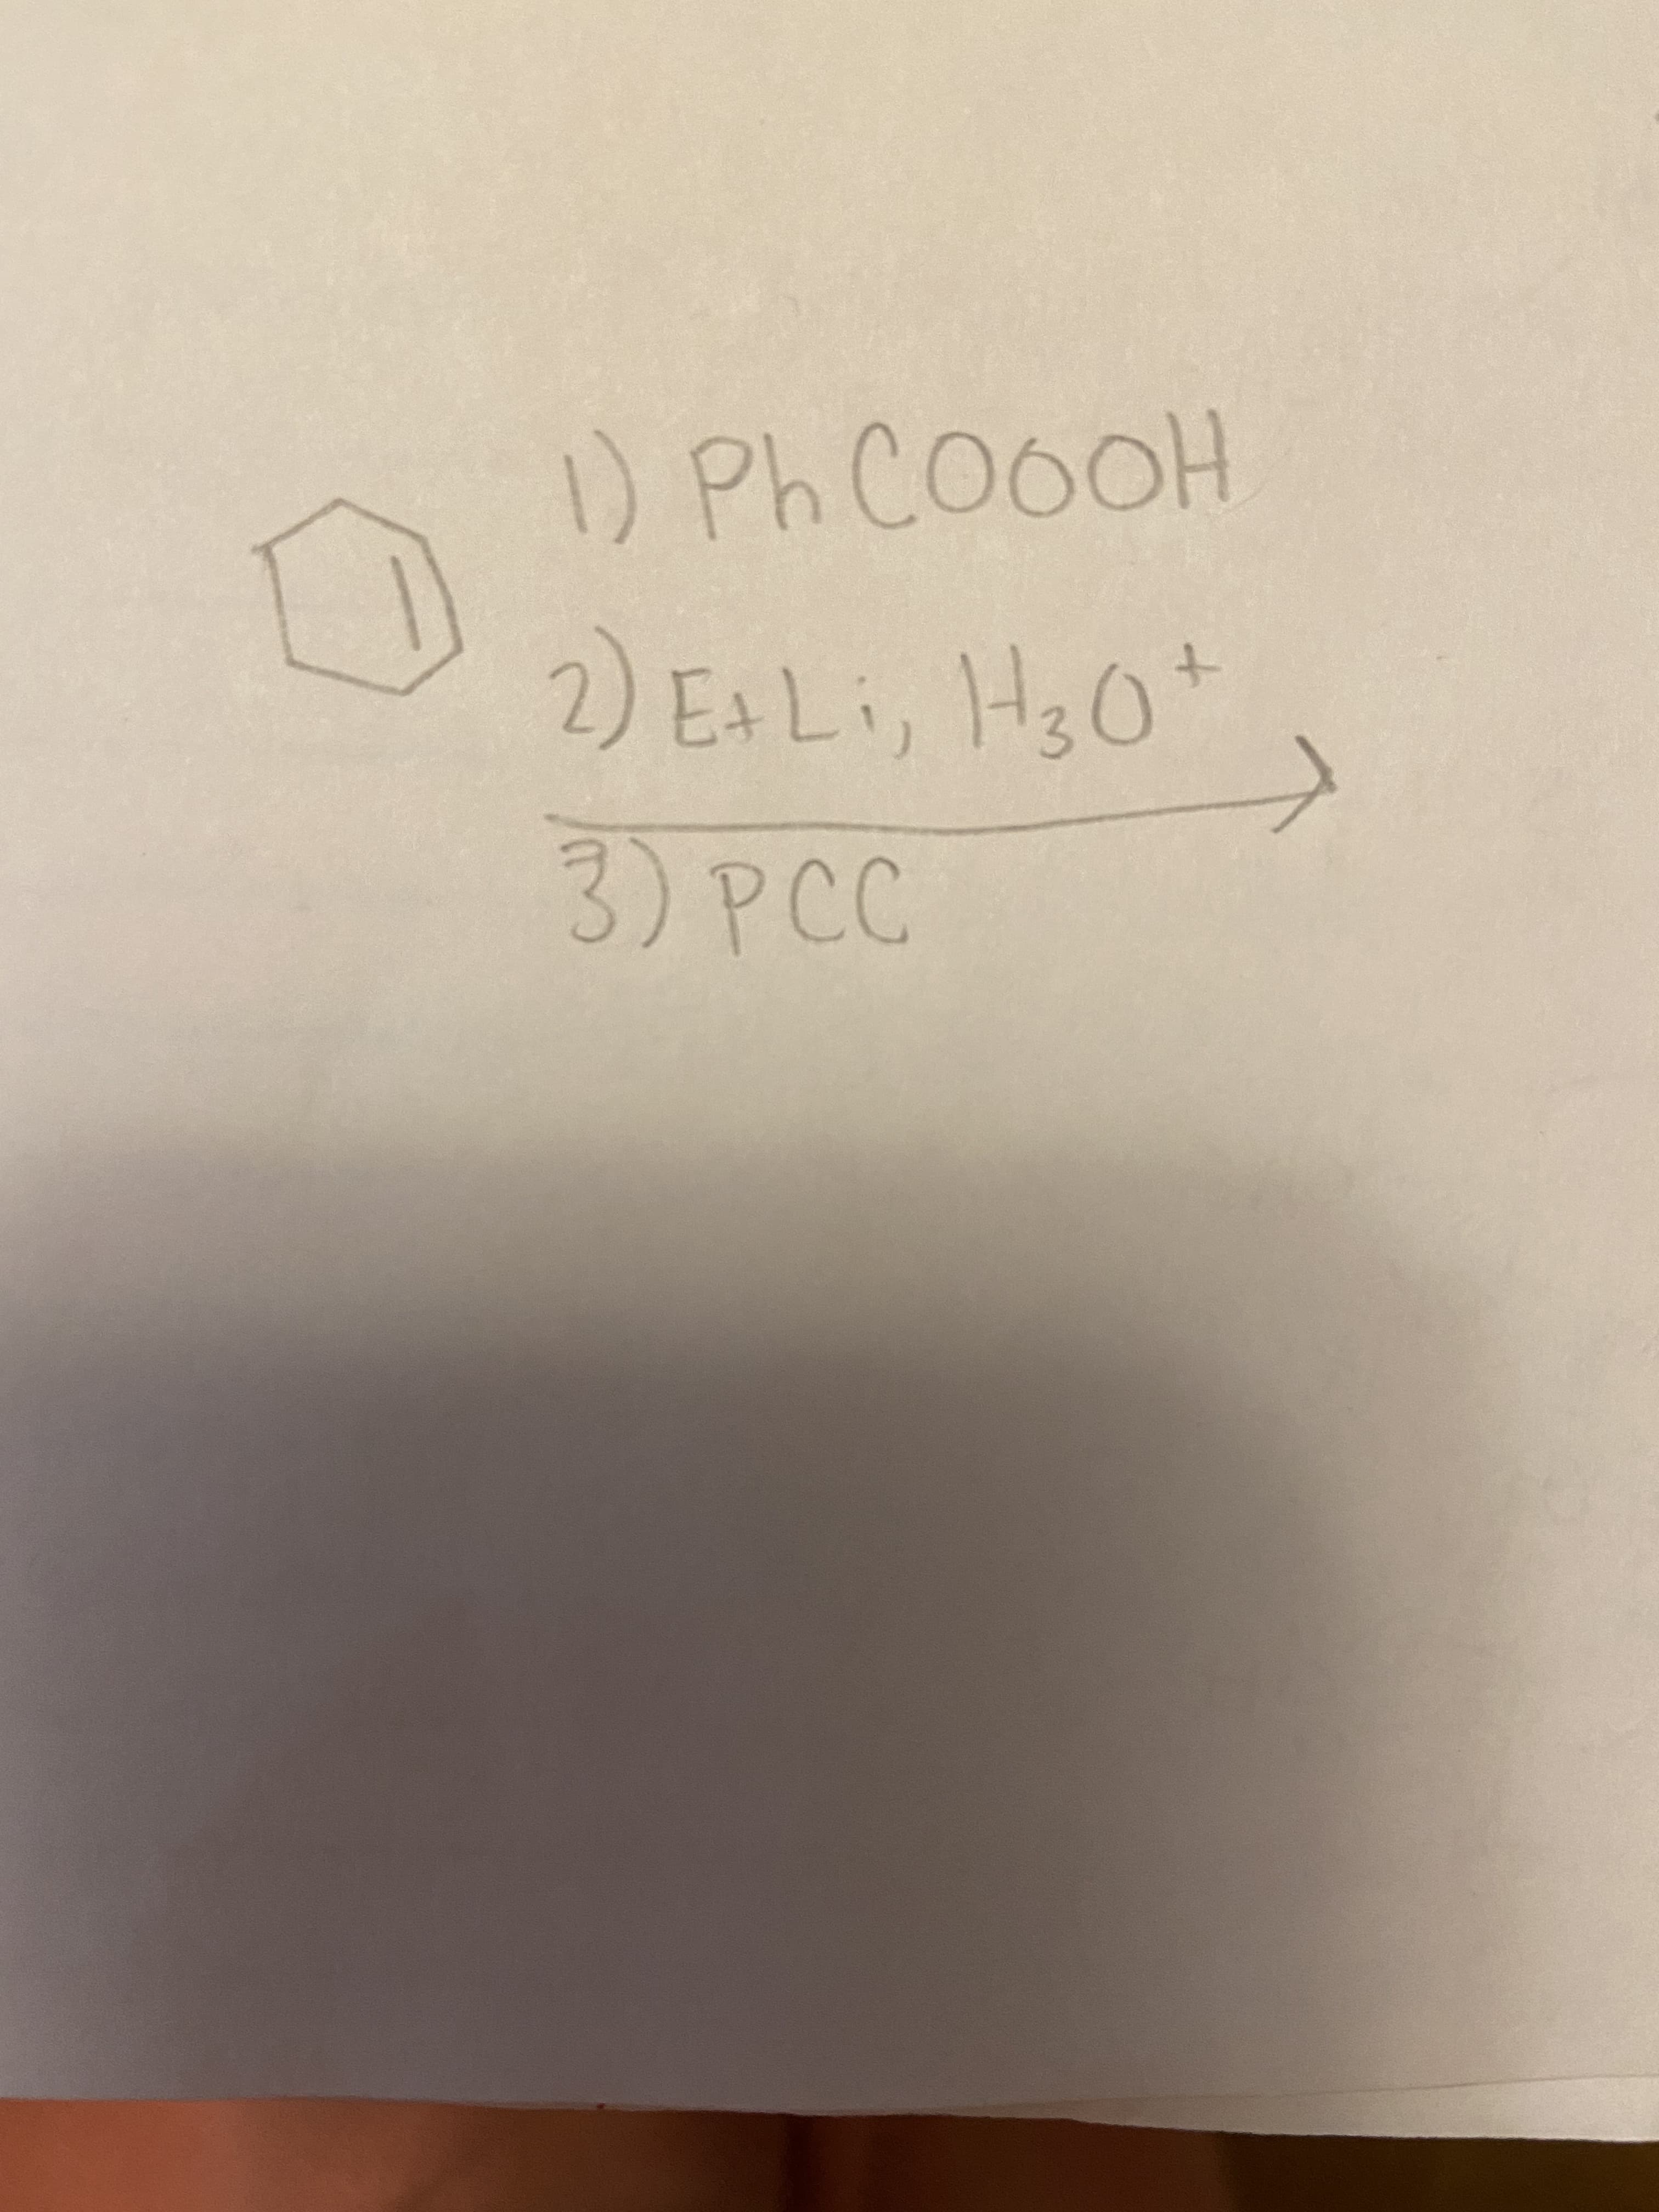 ) Ph CO0OH
2) EALI, H30*
3)PCC
